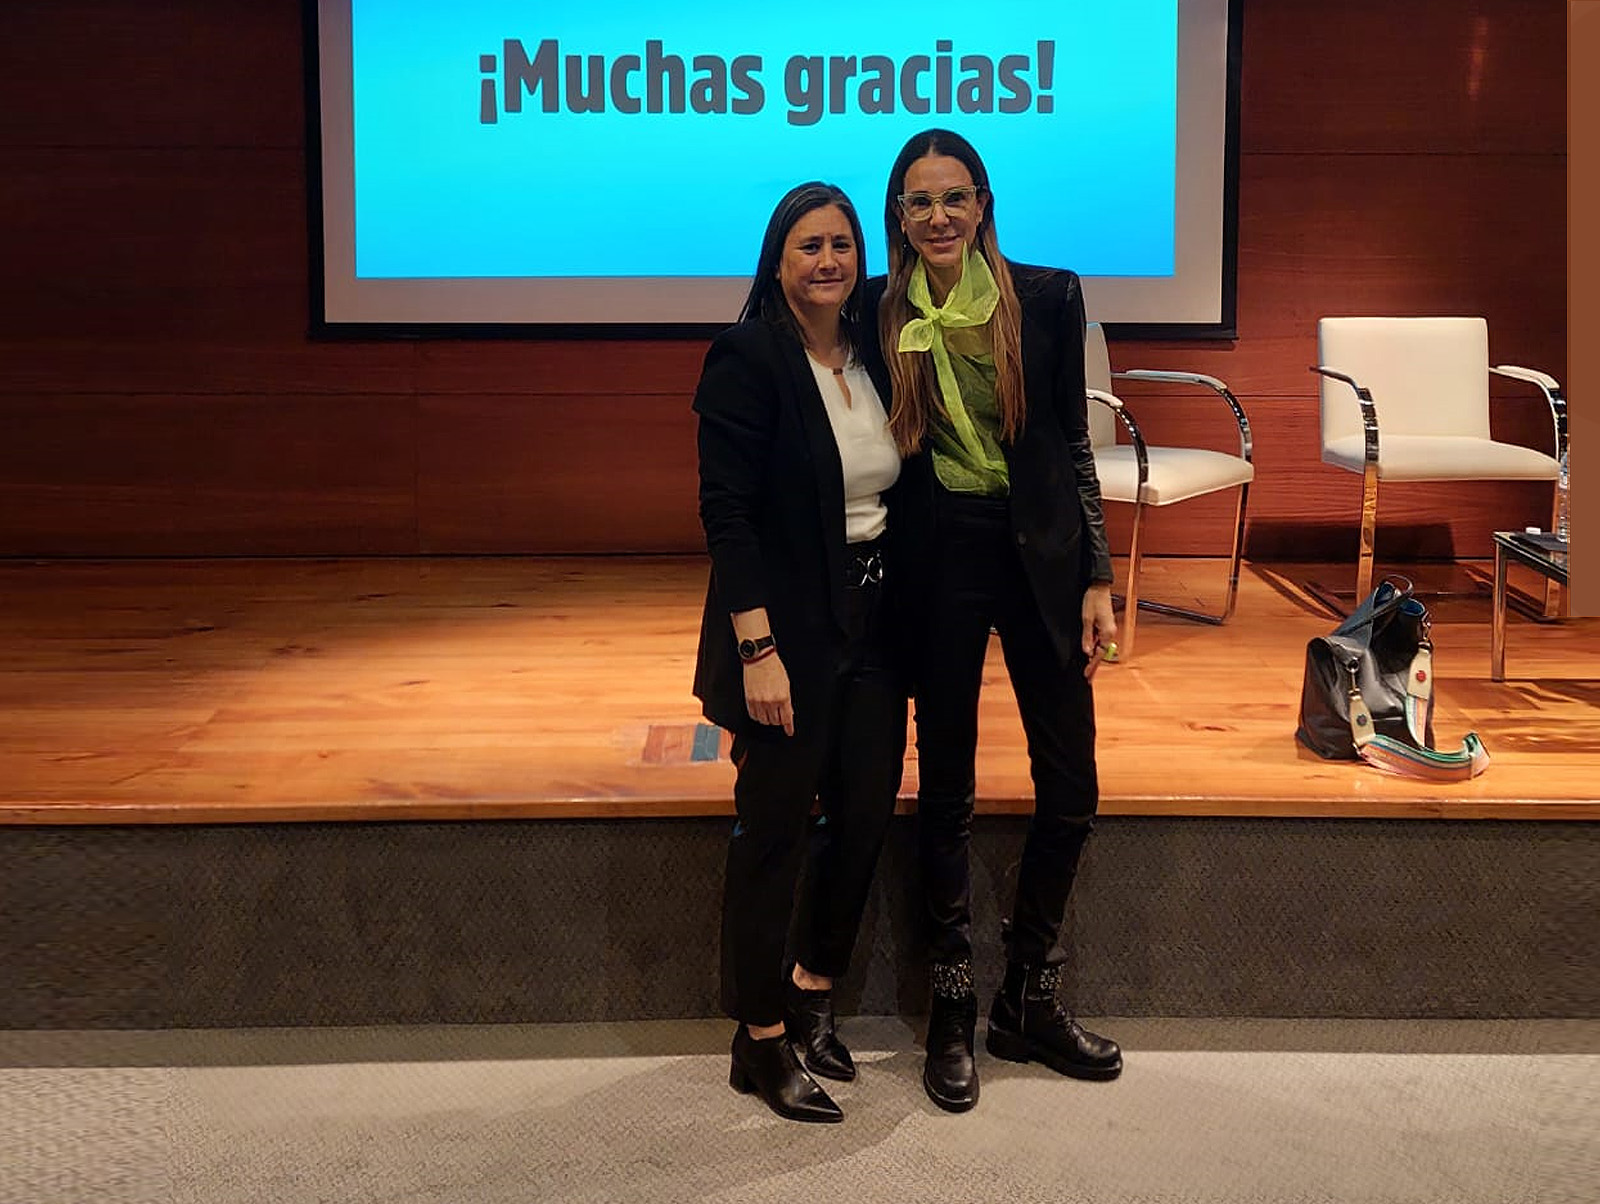 Visita y exposición de la Dra. Marisa Herrera el 23/8 en el CASI, presentada por la Presidenta Dra. Guillermina Soria